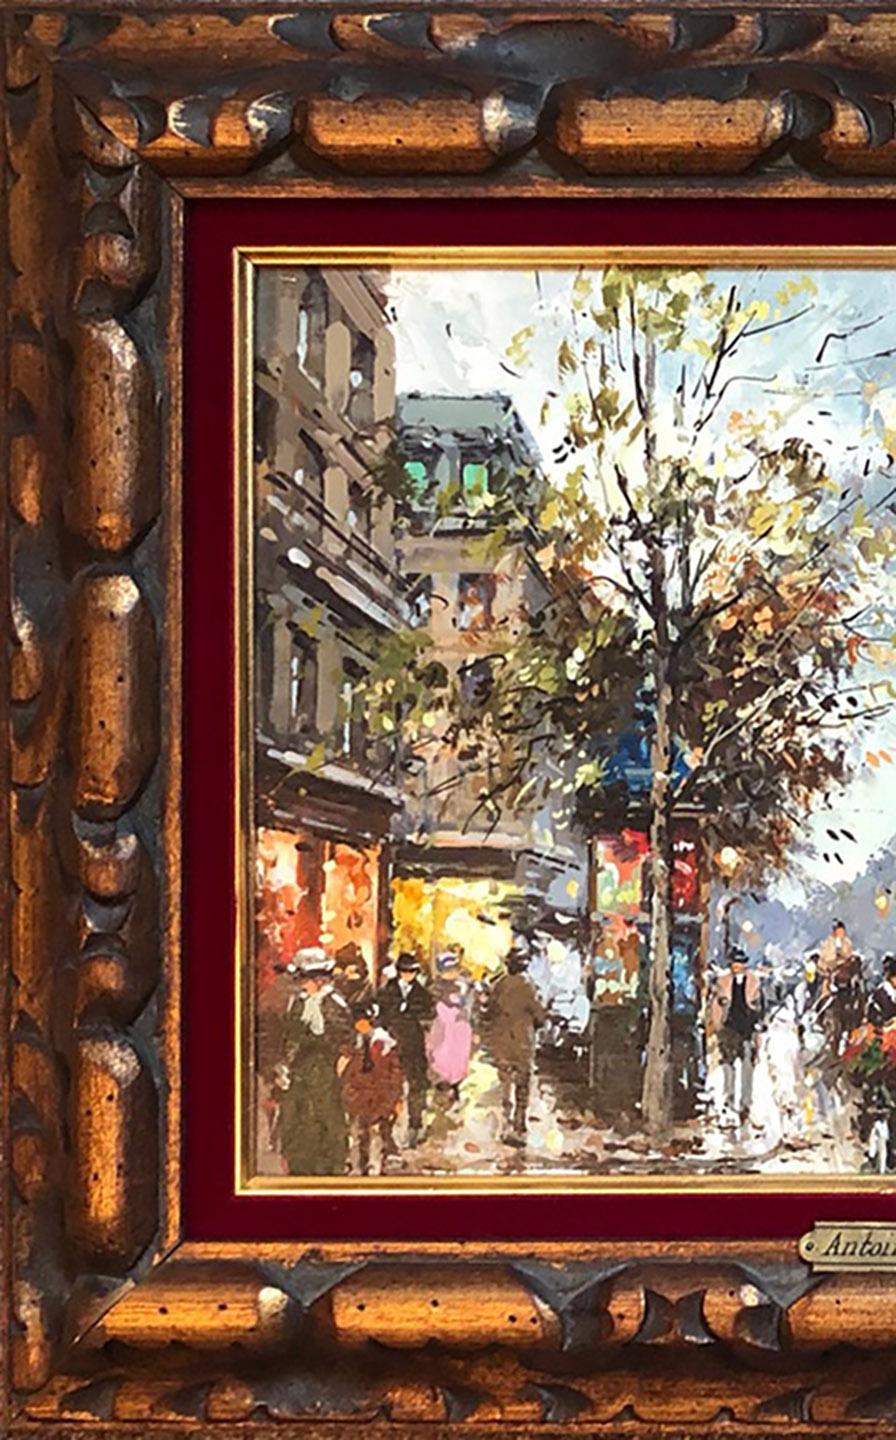 Paris - Painting by Antoine Blanchard